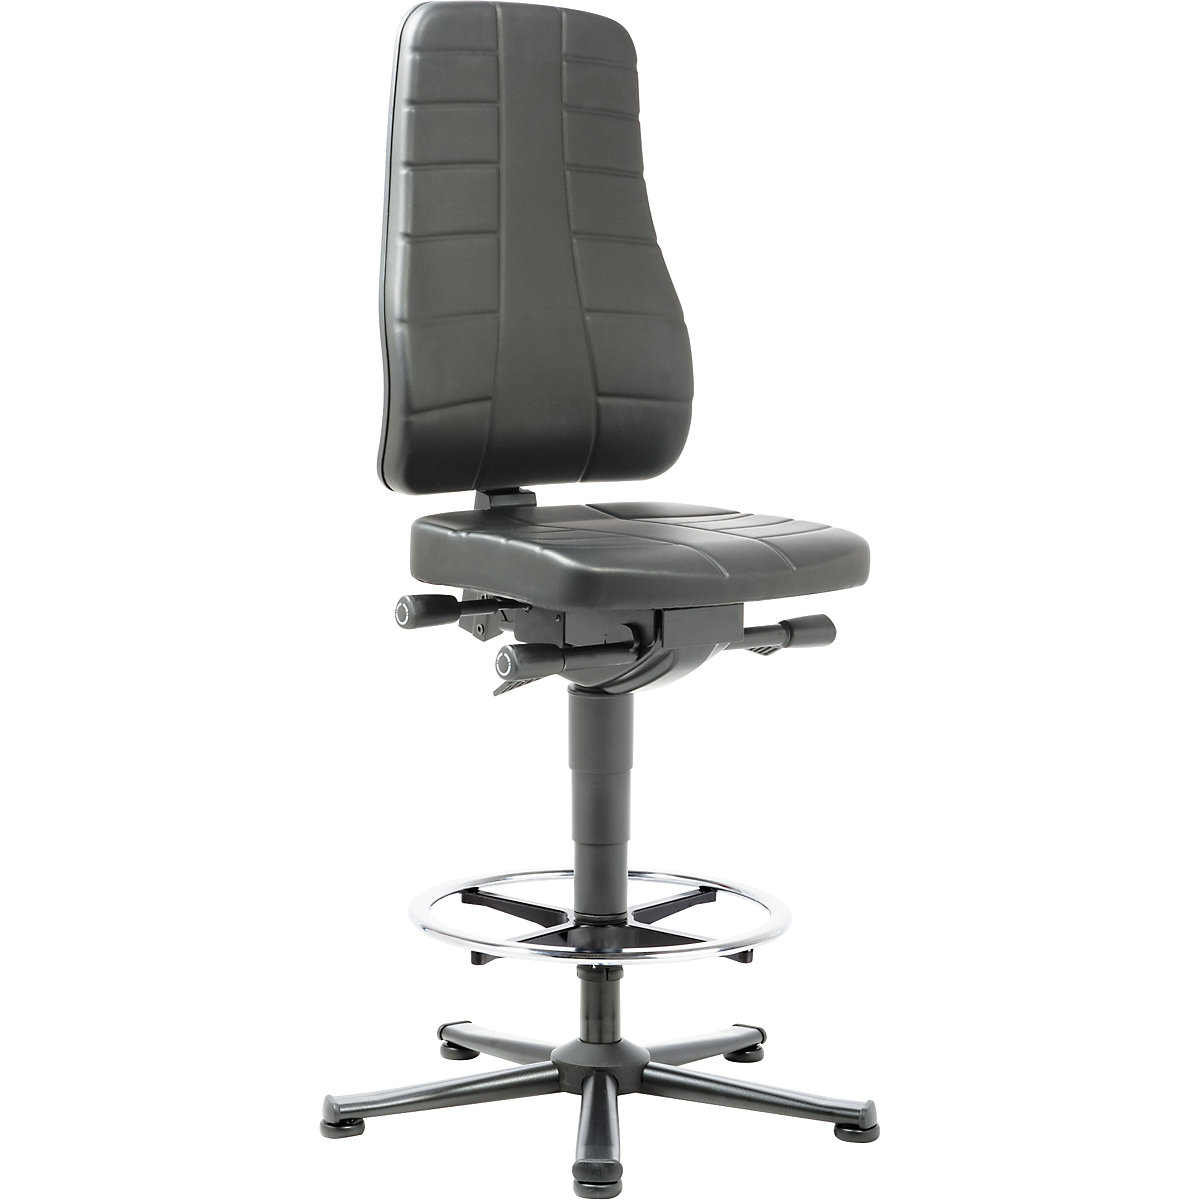 Radna okretna stolica All-in-One – bimos, s podnim vodilicama i nožnim obručem, umjetna koža, u crnoj boji-6